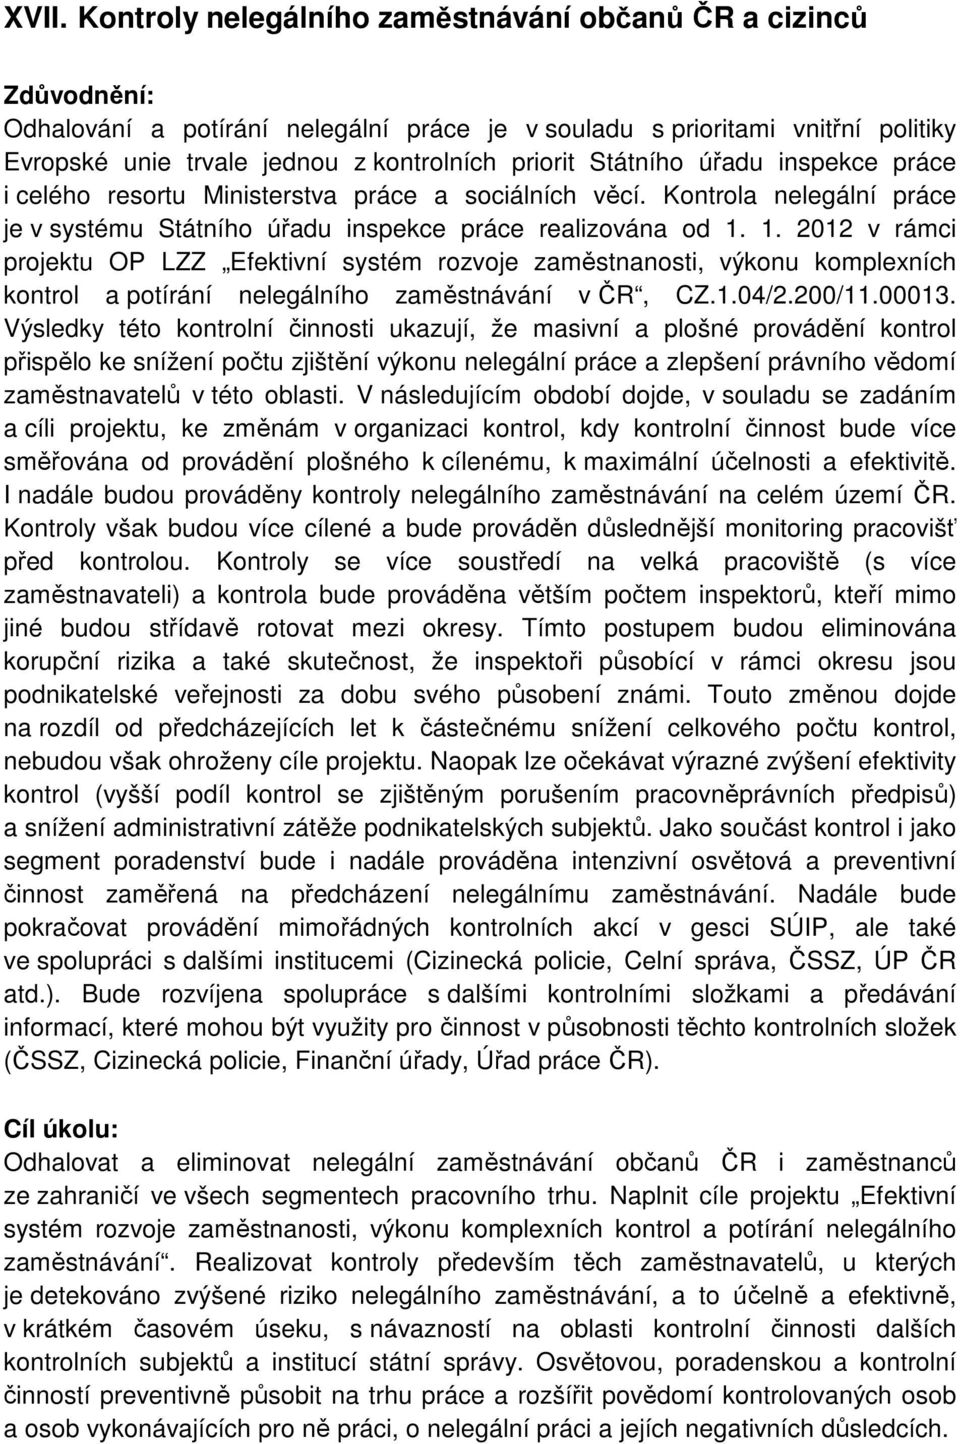 1. 2012 v rámci projektu OP LZZ Efektivní systém rozvoje zaměstnanosti, výkonu komplexních kontrol a potírání nelegálního zaměstnávání v ČR, CZ.1.04/2.200/11.00013.